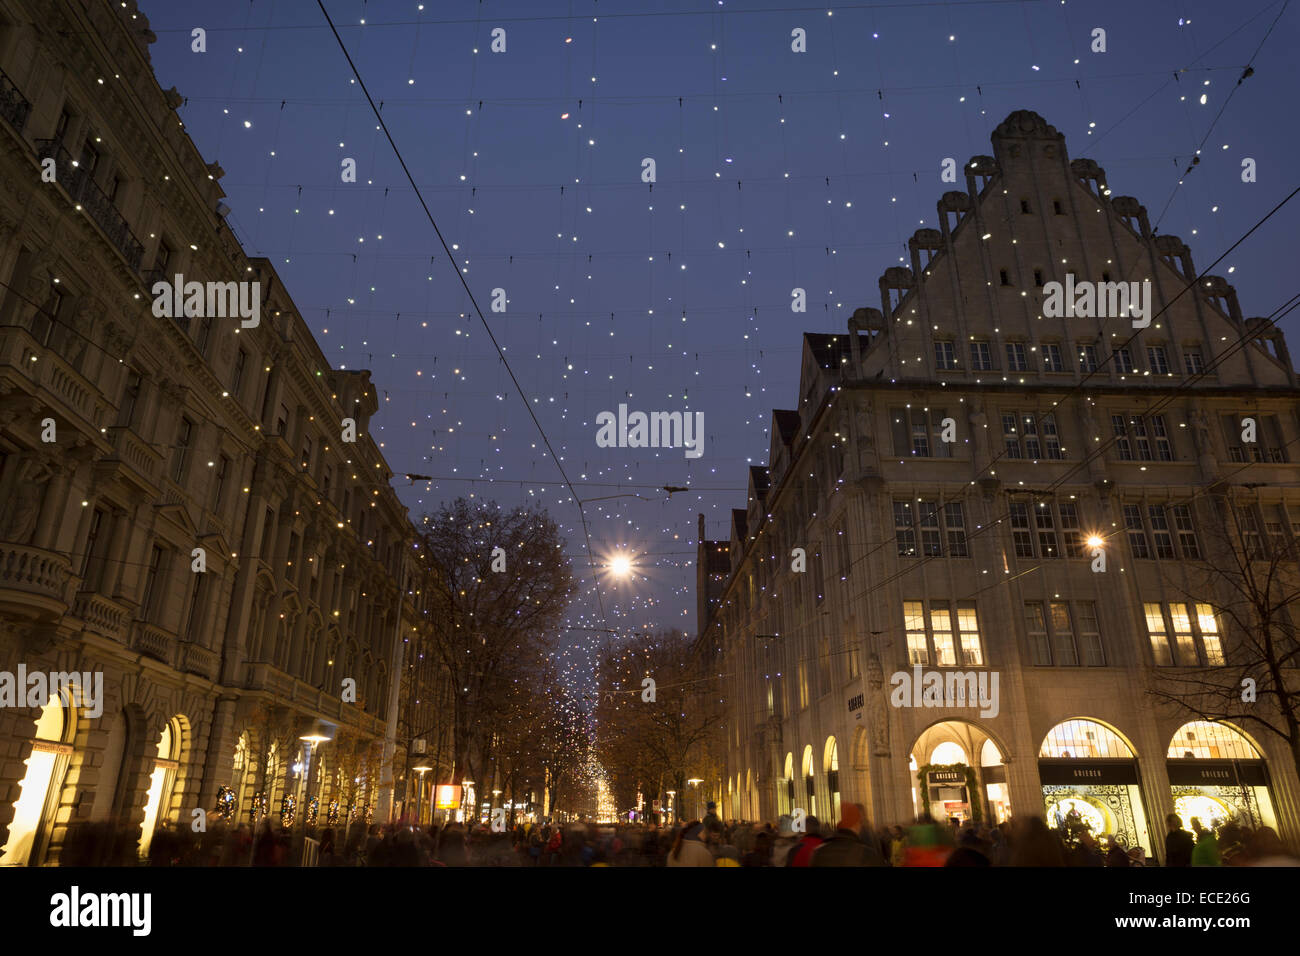 Illumination de Noël Lucy sur la Bahnhofstrasse, Zurich, Suisse. Banque D'Images